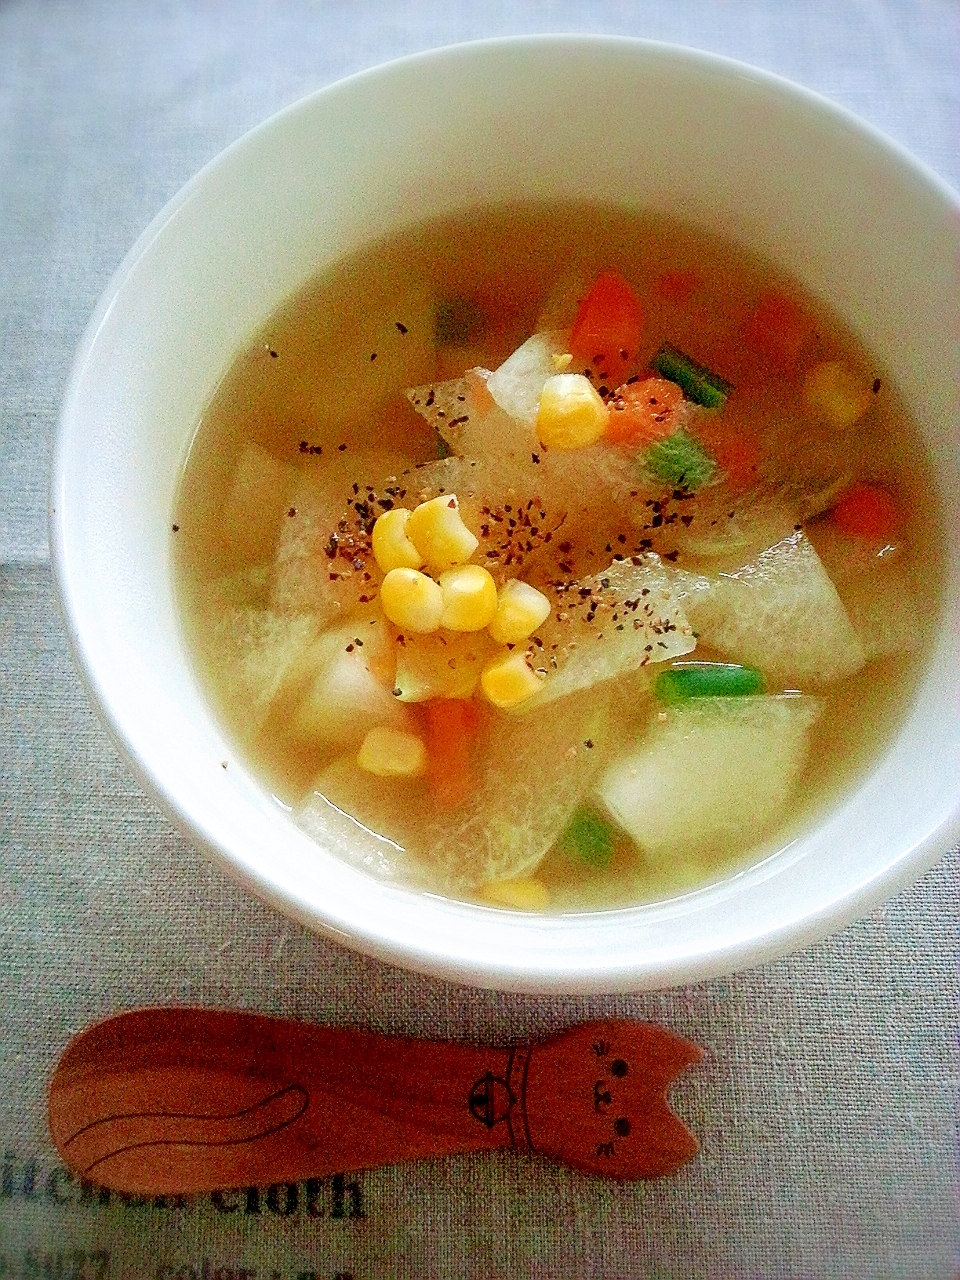 冬瓜とミックスベジタブルのスープ